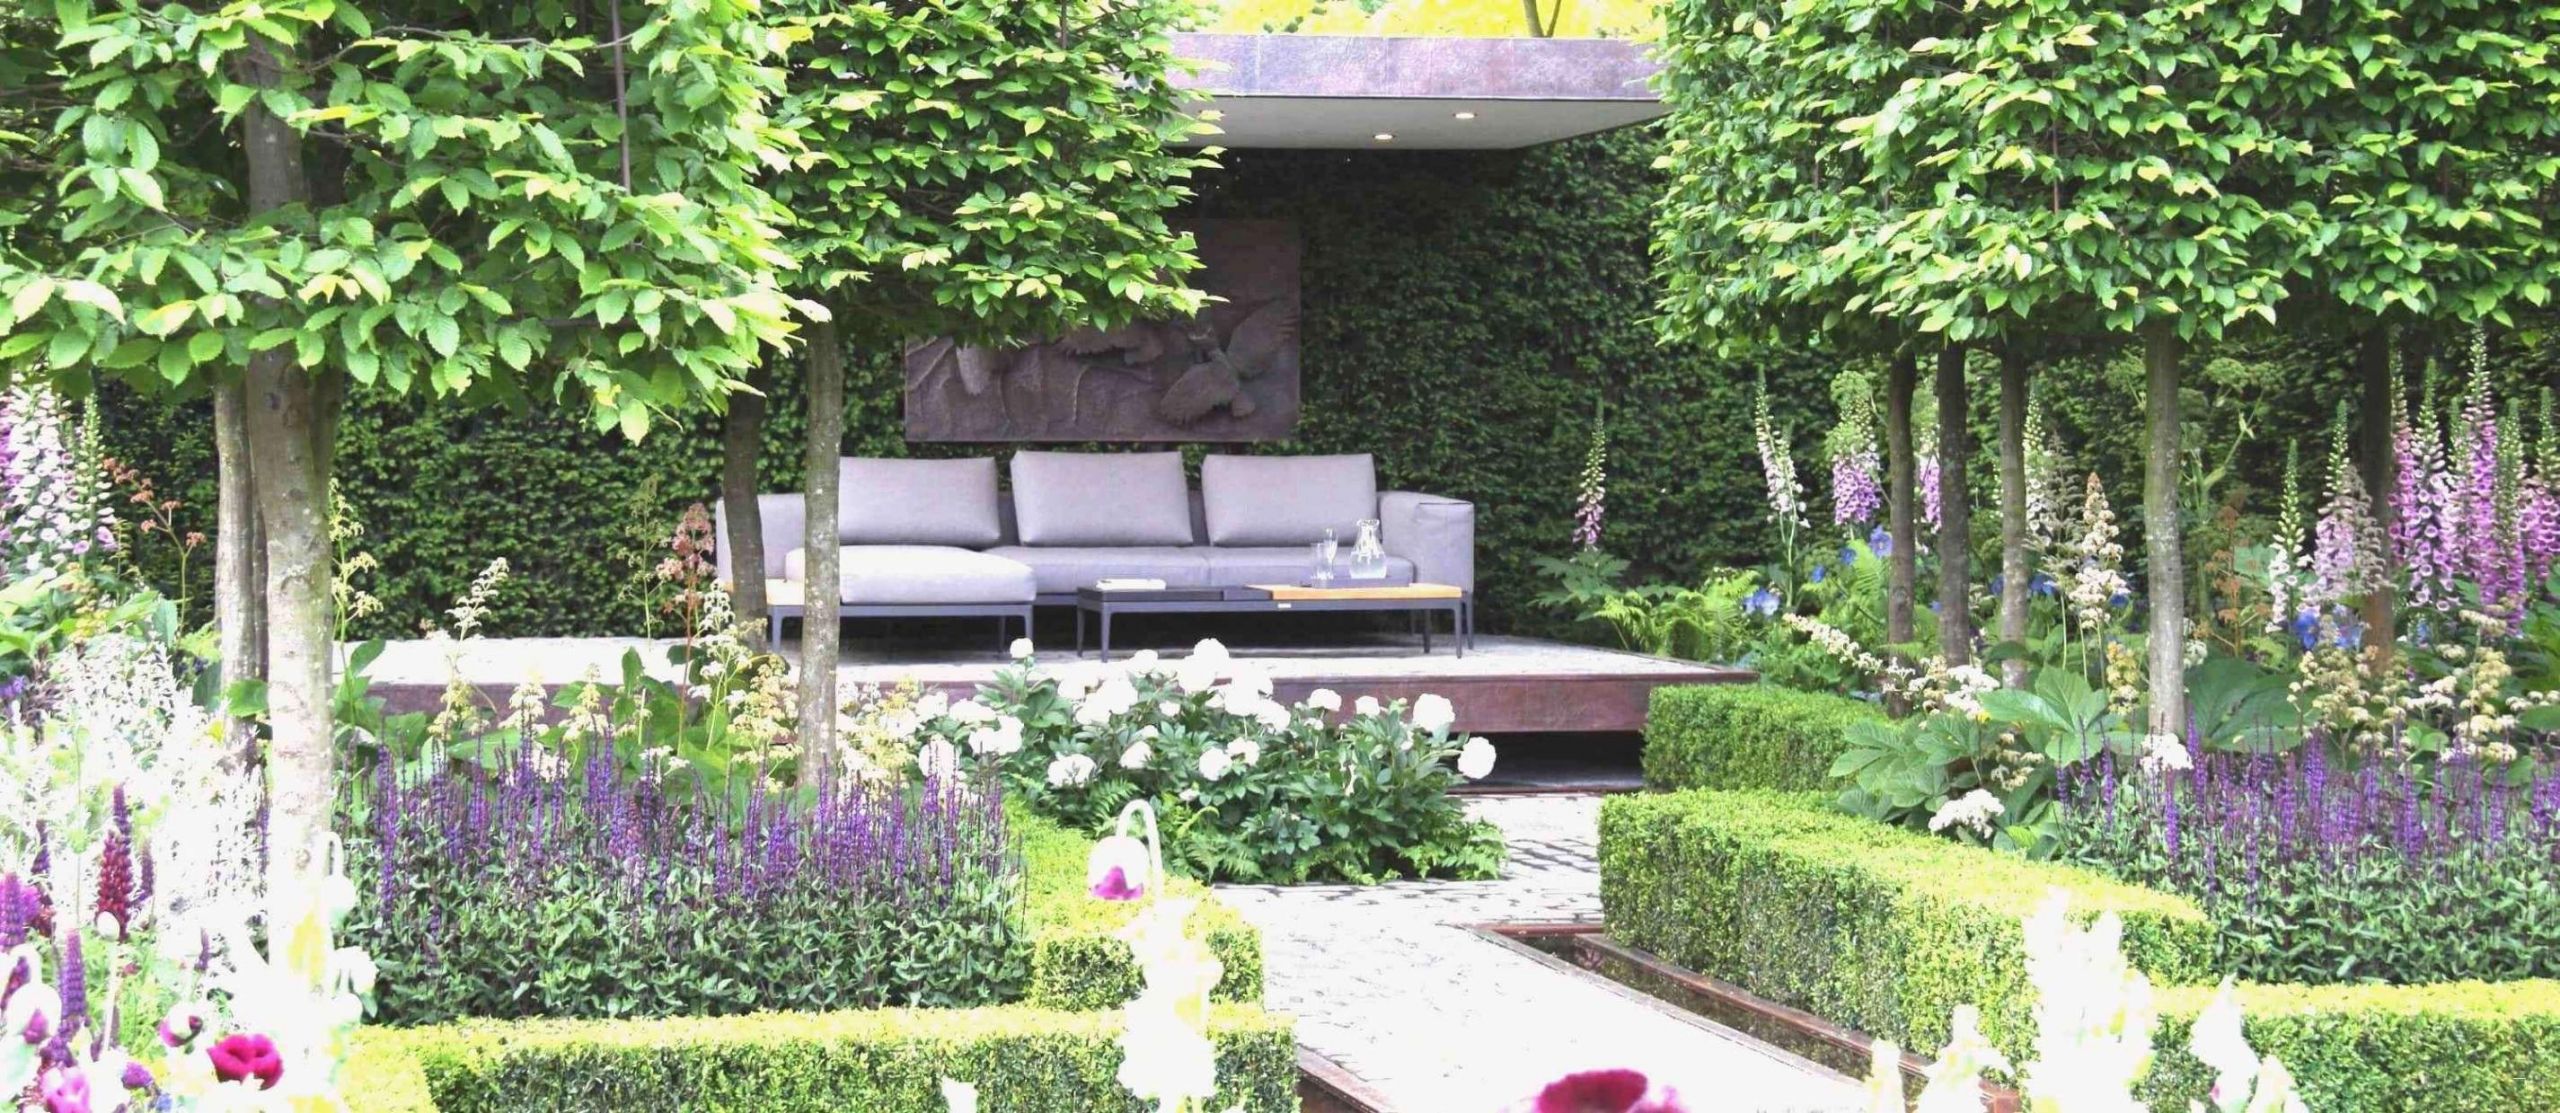 Kleine Gärten Gestalten Bilder Schön 40 Elegant Japanische Gärten Selbst Gestalten Das Beste Von